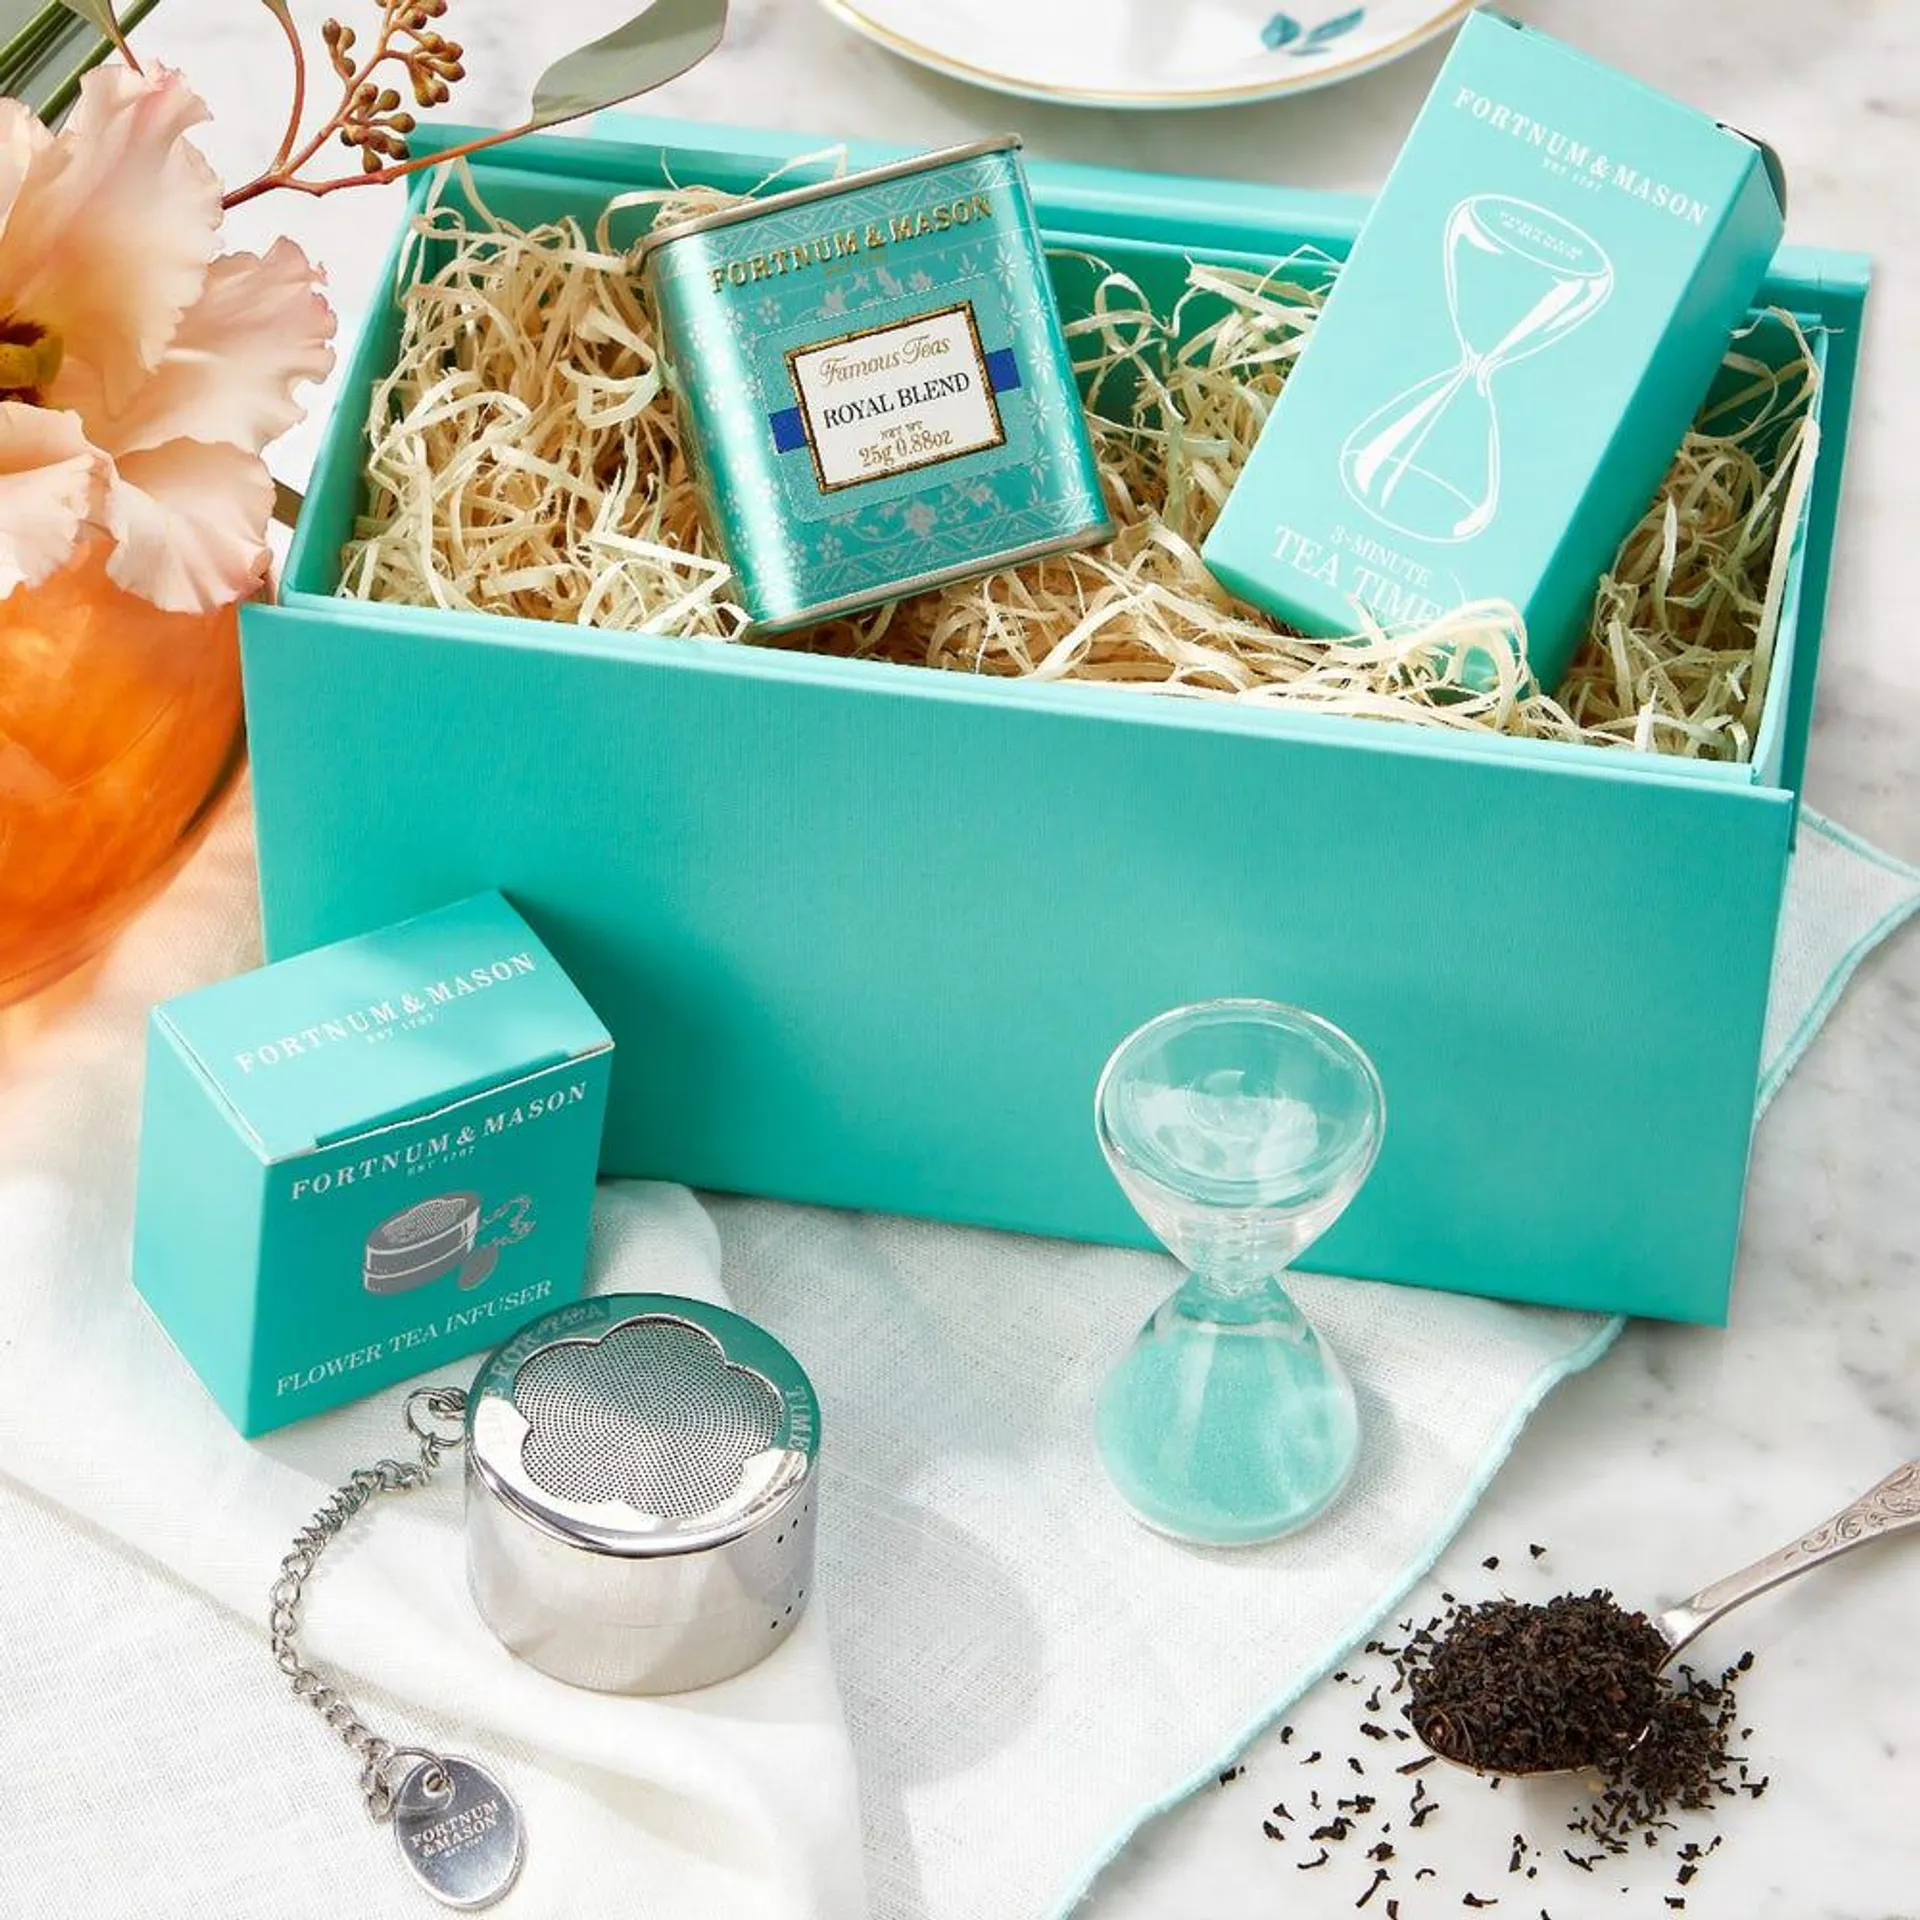 The Fortnum's Tea Kit Gift Box